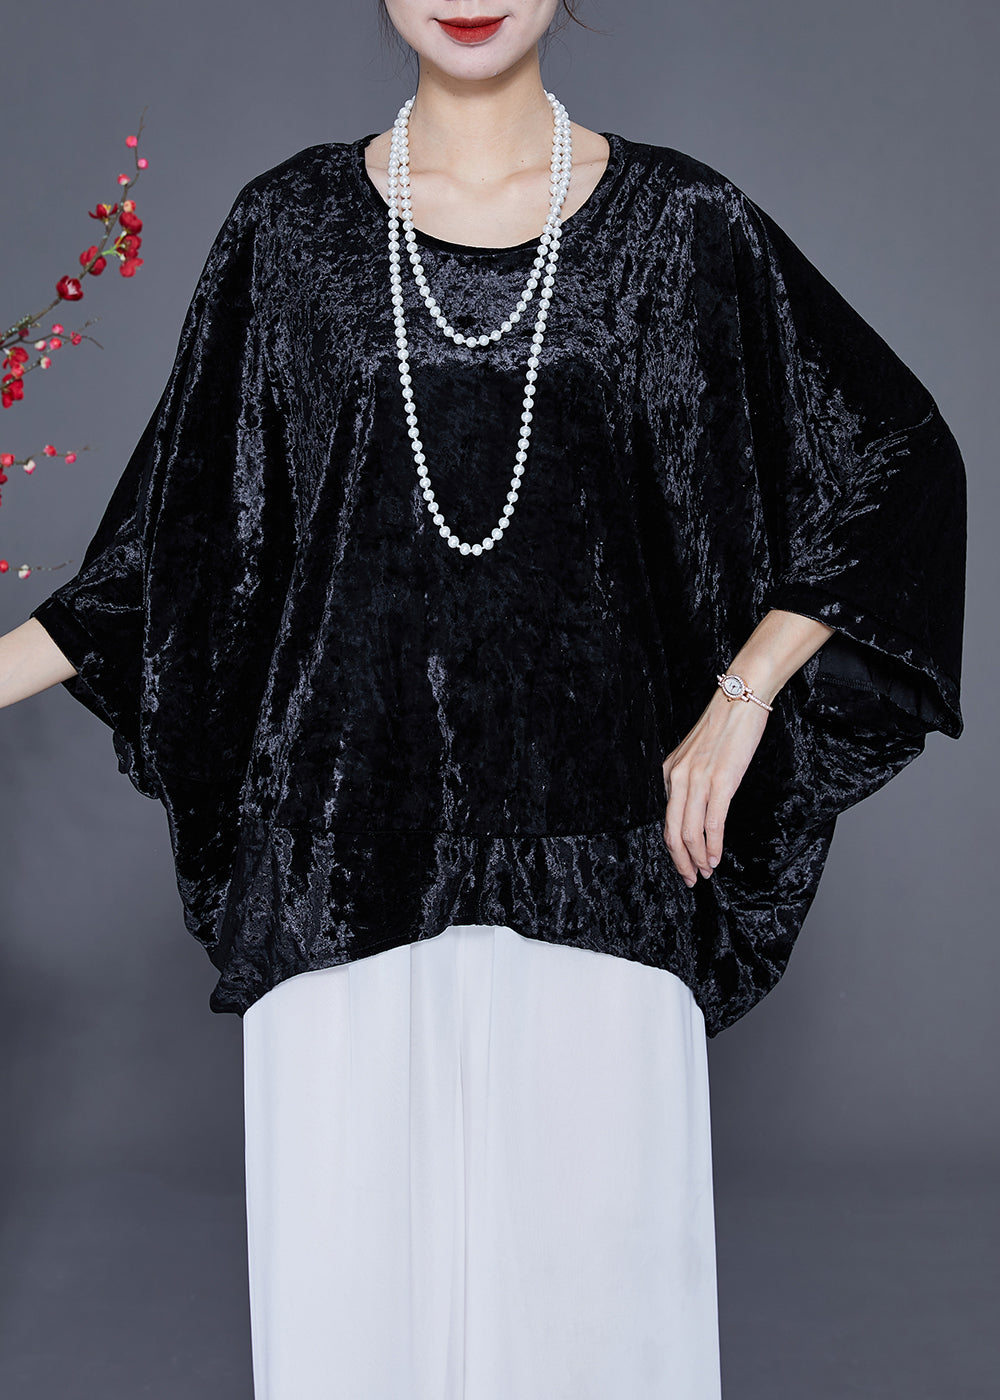 French Black O-Neck Oversized Silk Velour Shirt Tops Batwing Sleeve LY2358 - fabuloryshop